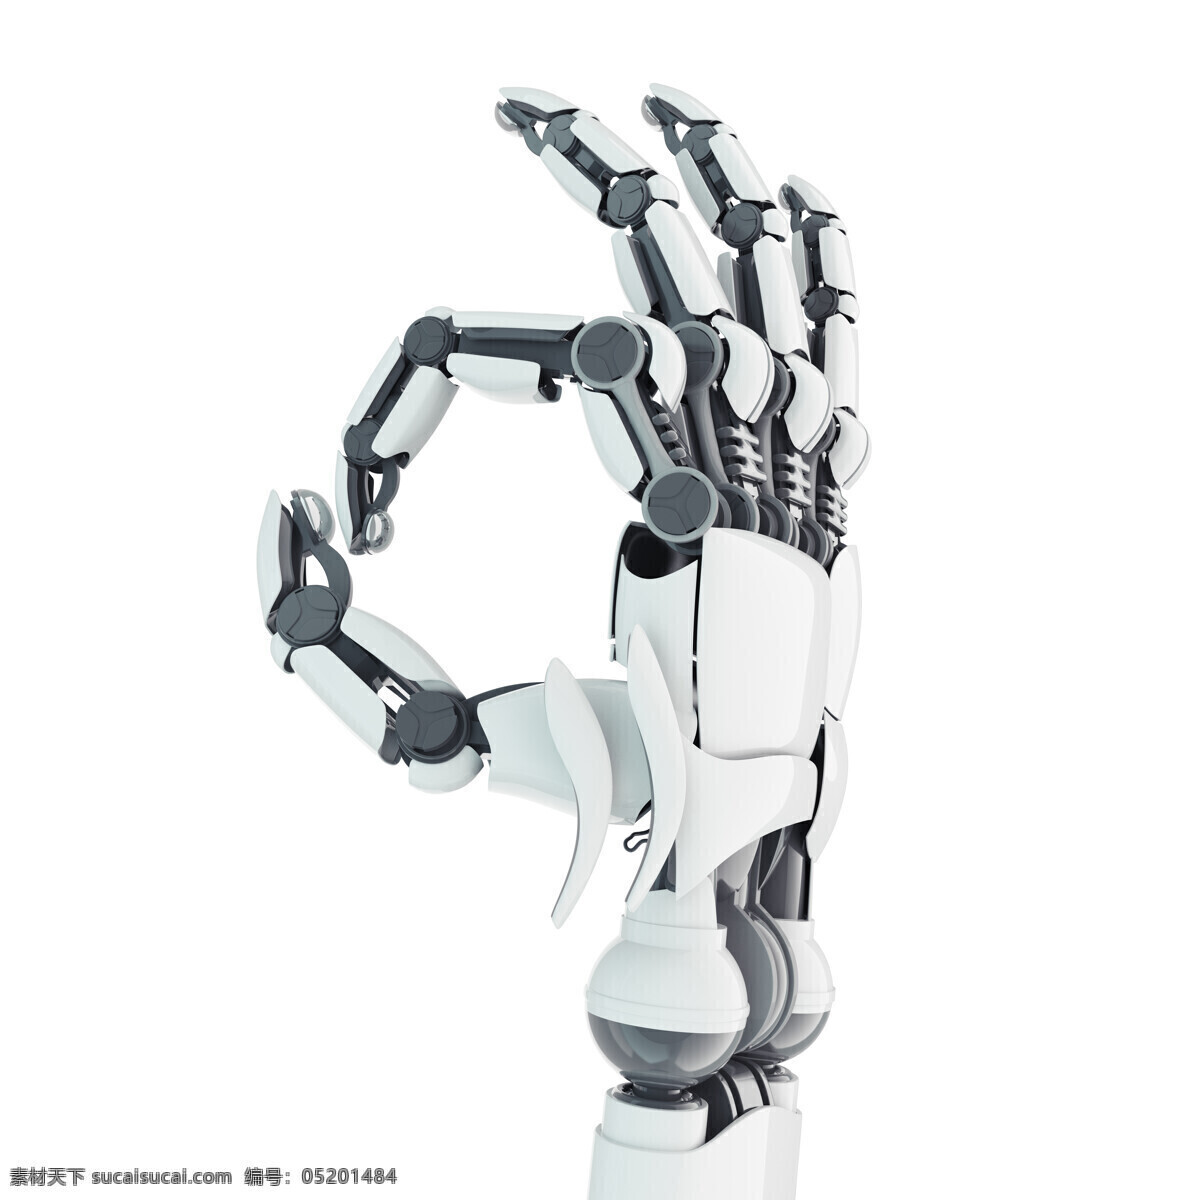 机器人 ok 手势 ok手势 机器人模型 未来科技 其他人物 人物图片